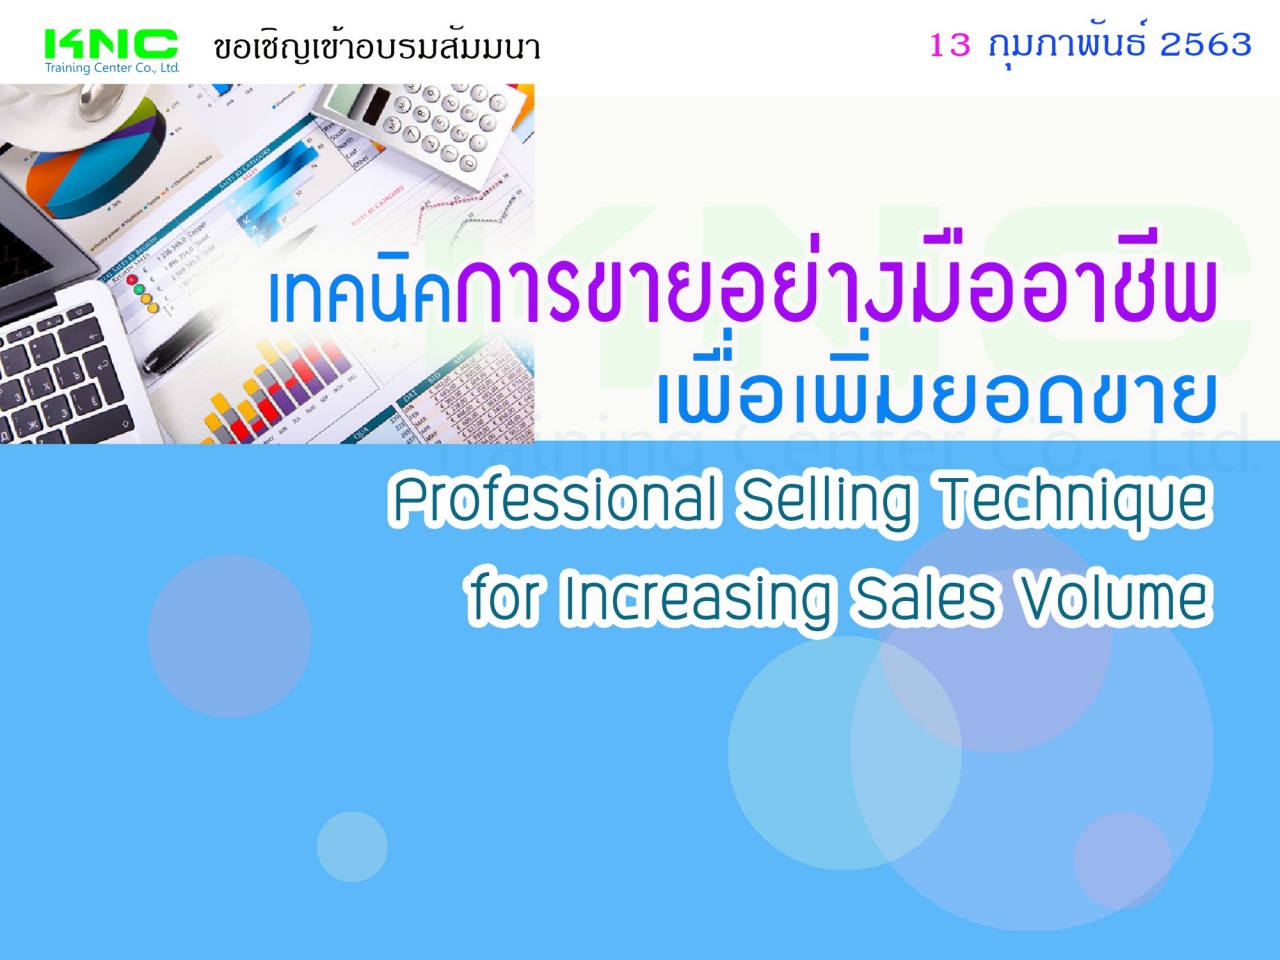 เทคนิคการขายอย่างมืออาชีพเพื่อเพิ่มยอดขาย (Professional Selling Technique for Increasing Sales Volume)